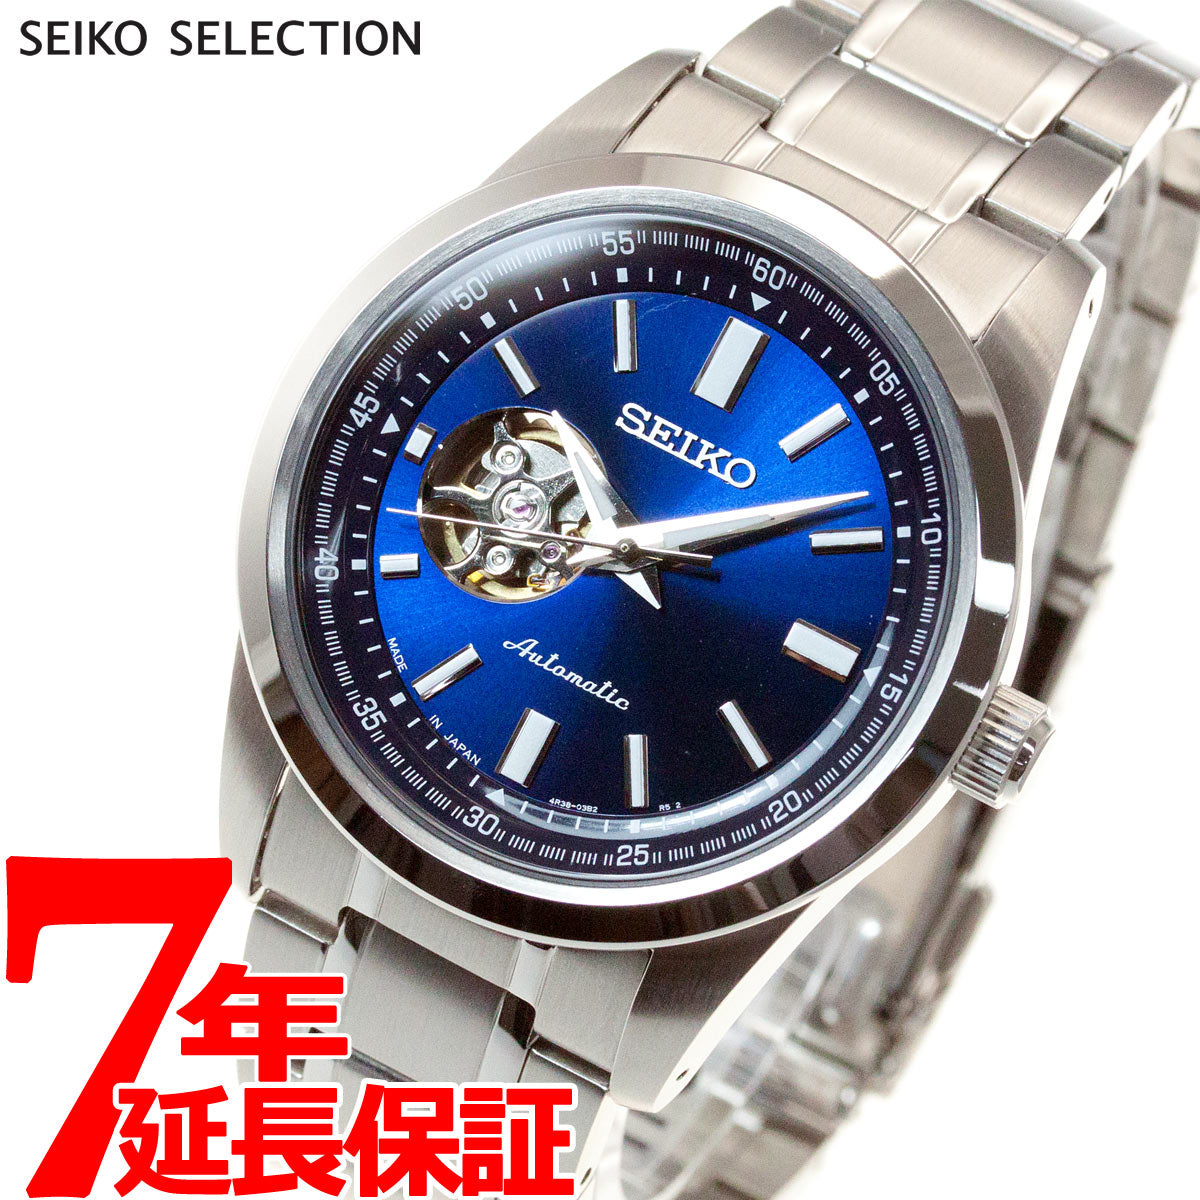 セイコー セレクション SEIKO SELECTION メカニカル 自動巻き 腕時計 メンズ セミスケルトン SCVE051